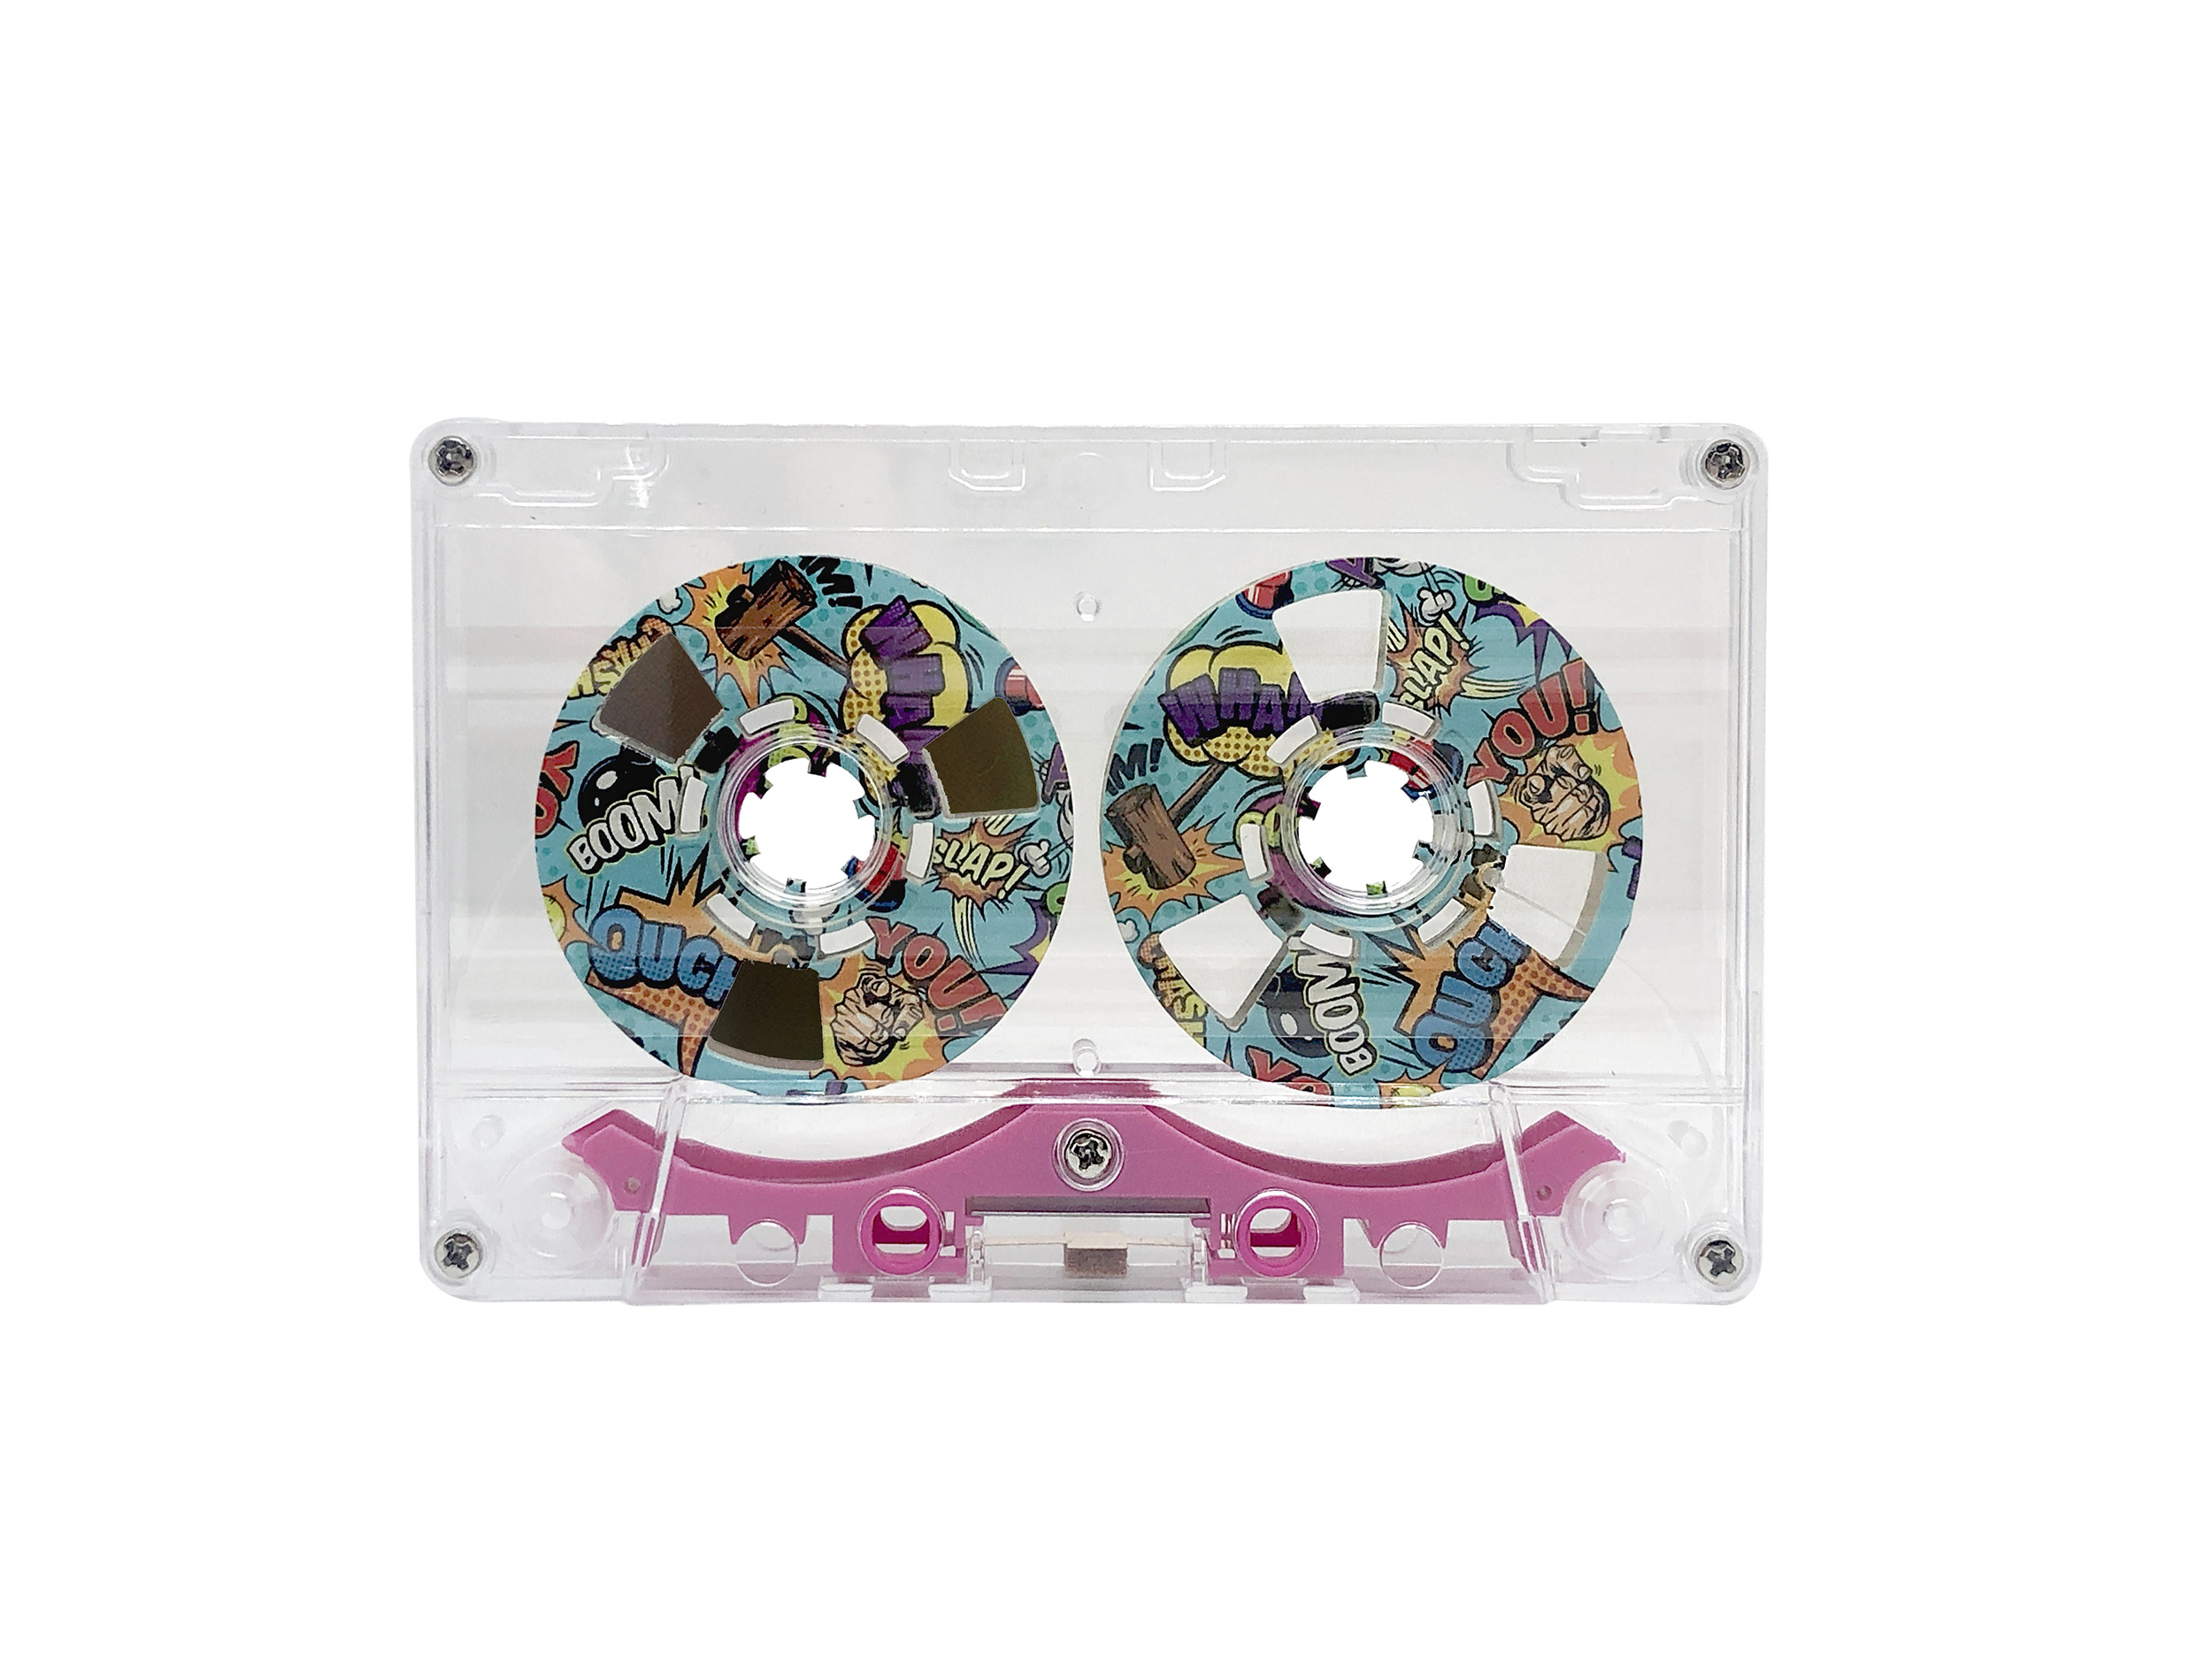 Reel to Reel cassette tape